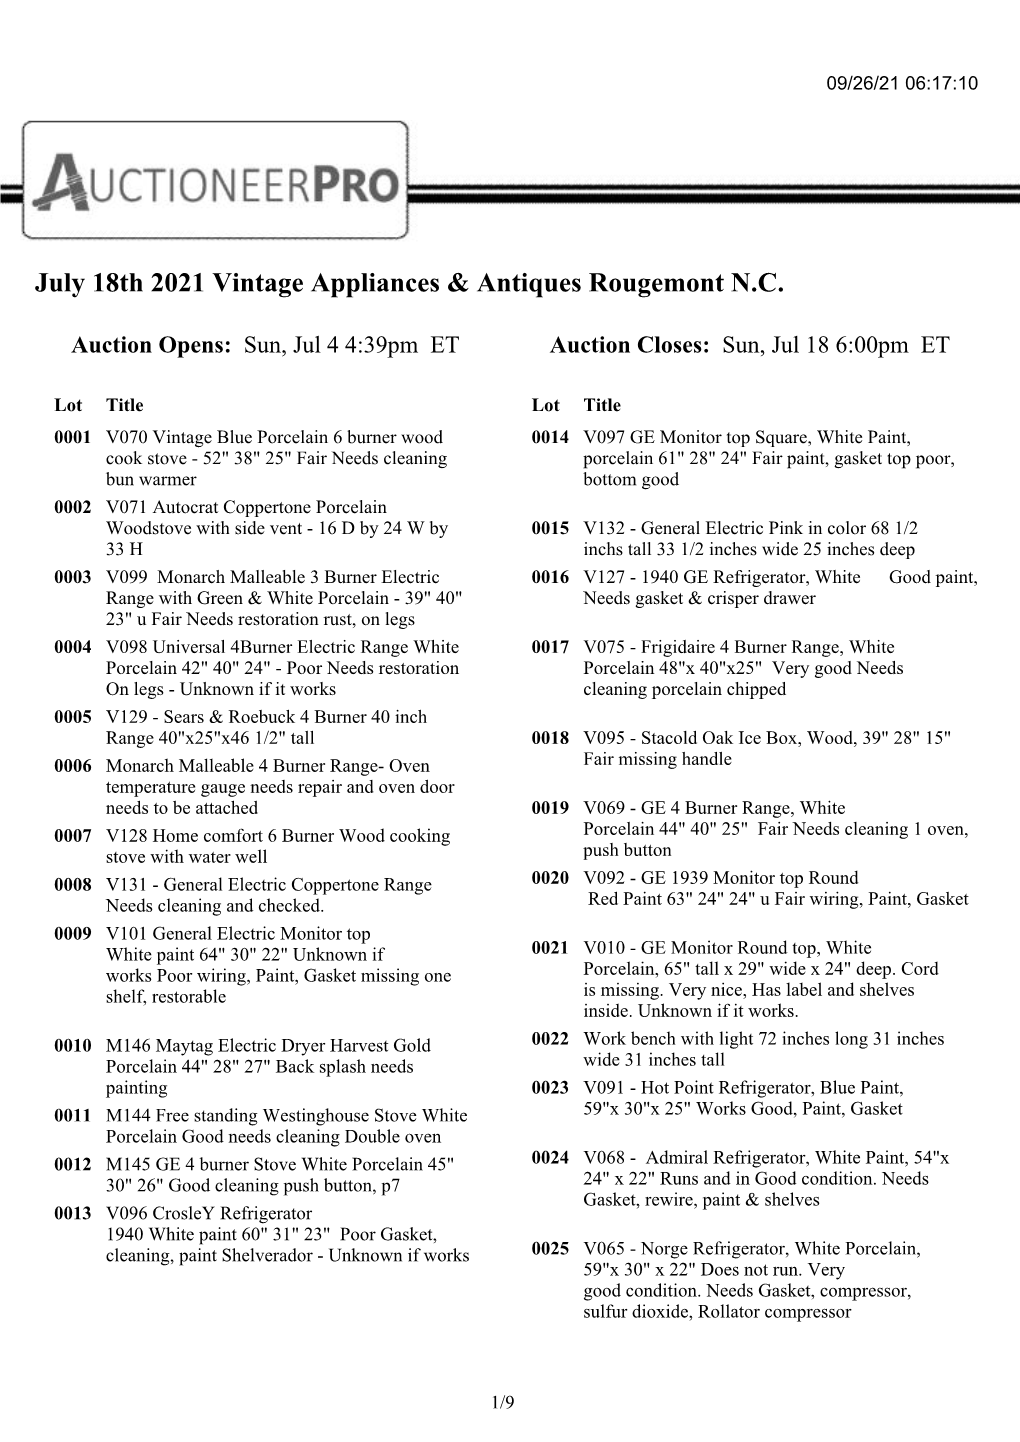 July 18Th 2021 Vintage Appliances & Antiques Rougemont N.C